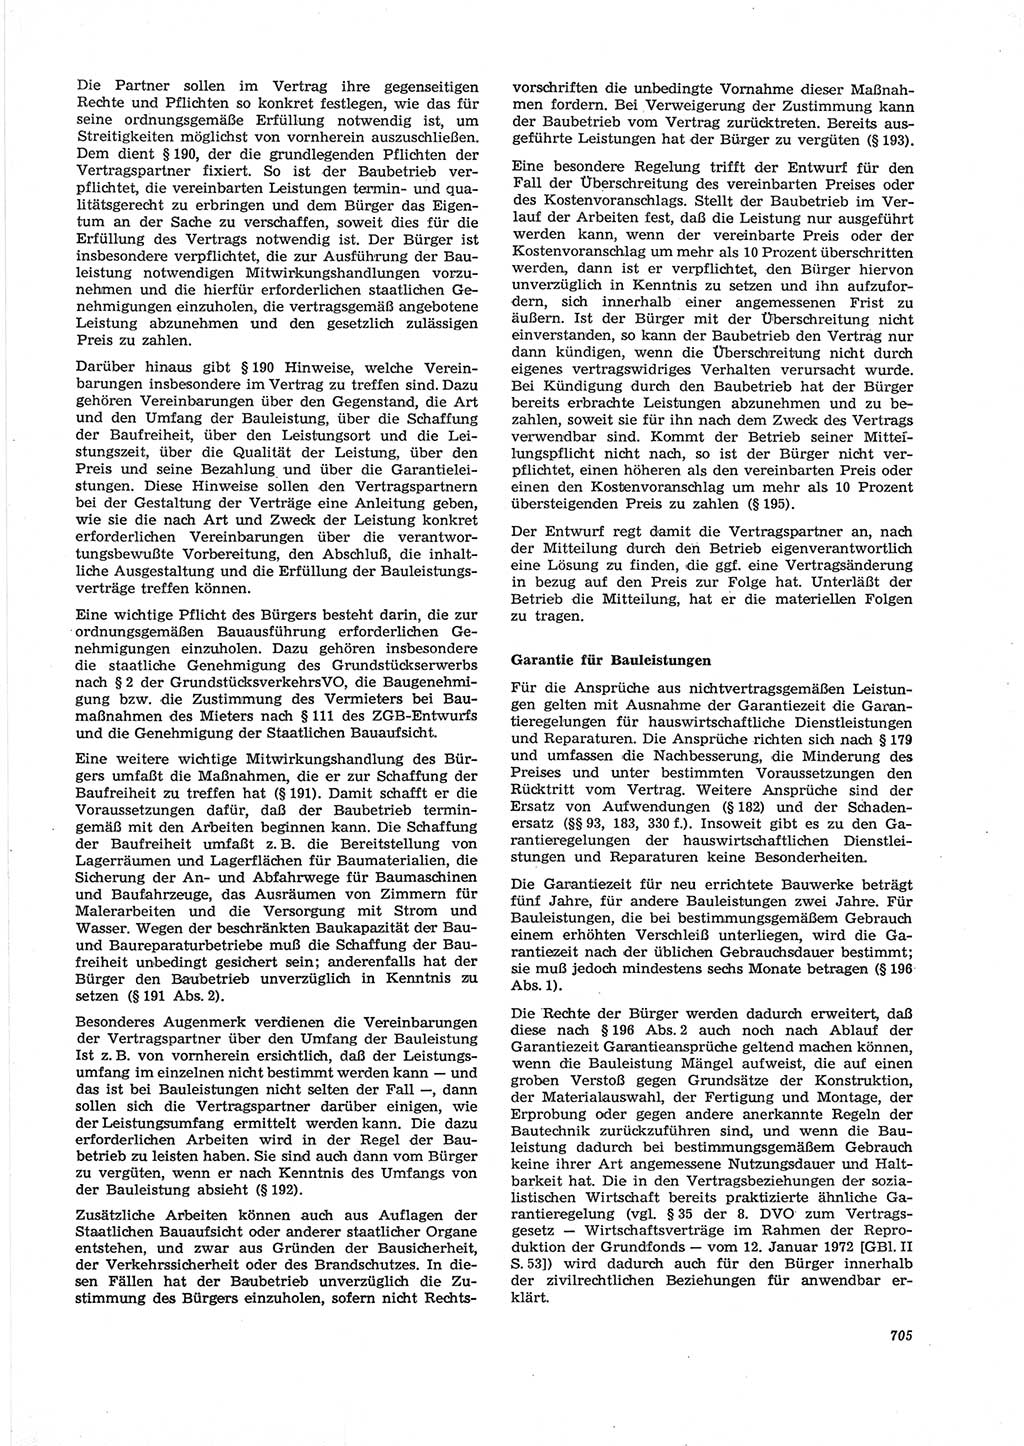 Neue Justiz (NJ), Zeitschrift für Recht und Rechtswissenschaft [Deutsche Demokratische Republik (DDR)], 28. Jahrgang 1974, Seite 705 (NJ DDR 1974, S. 705)